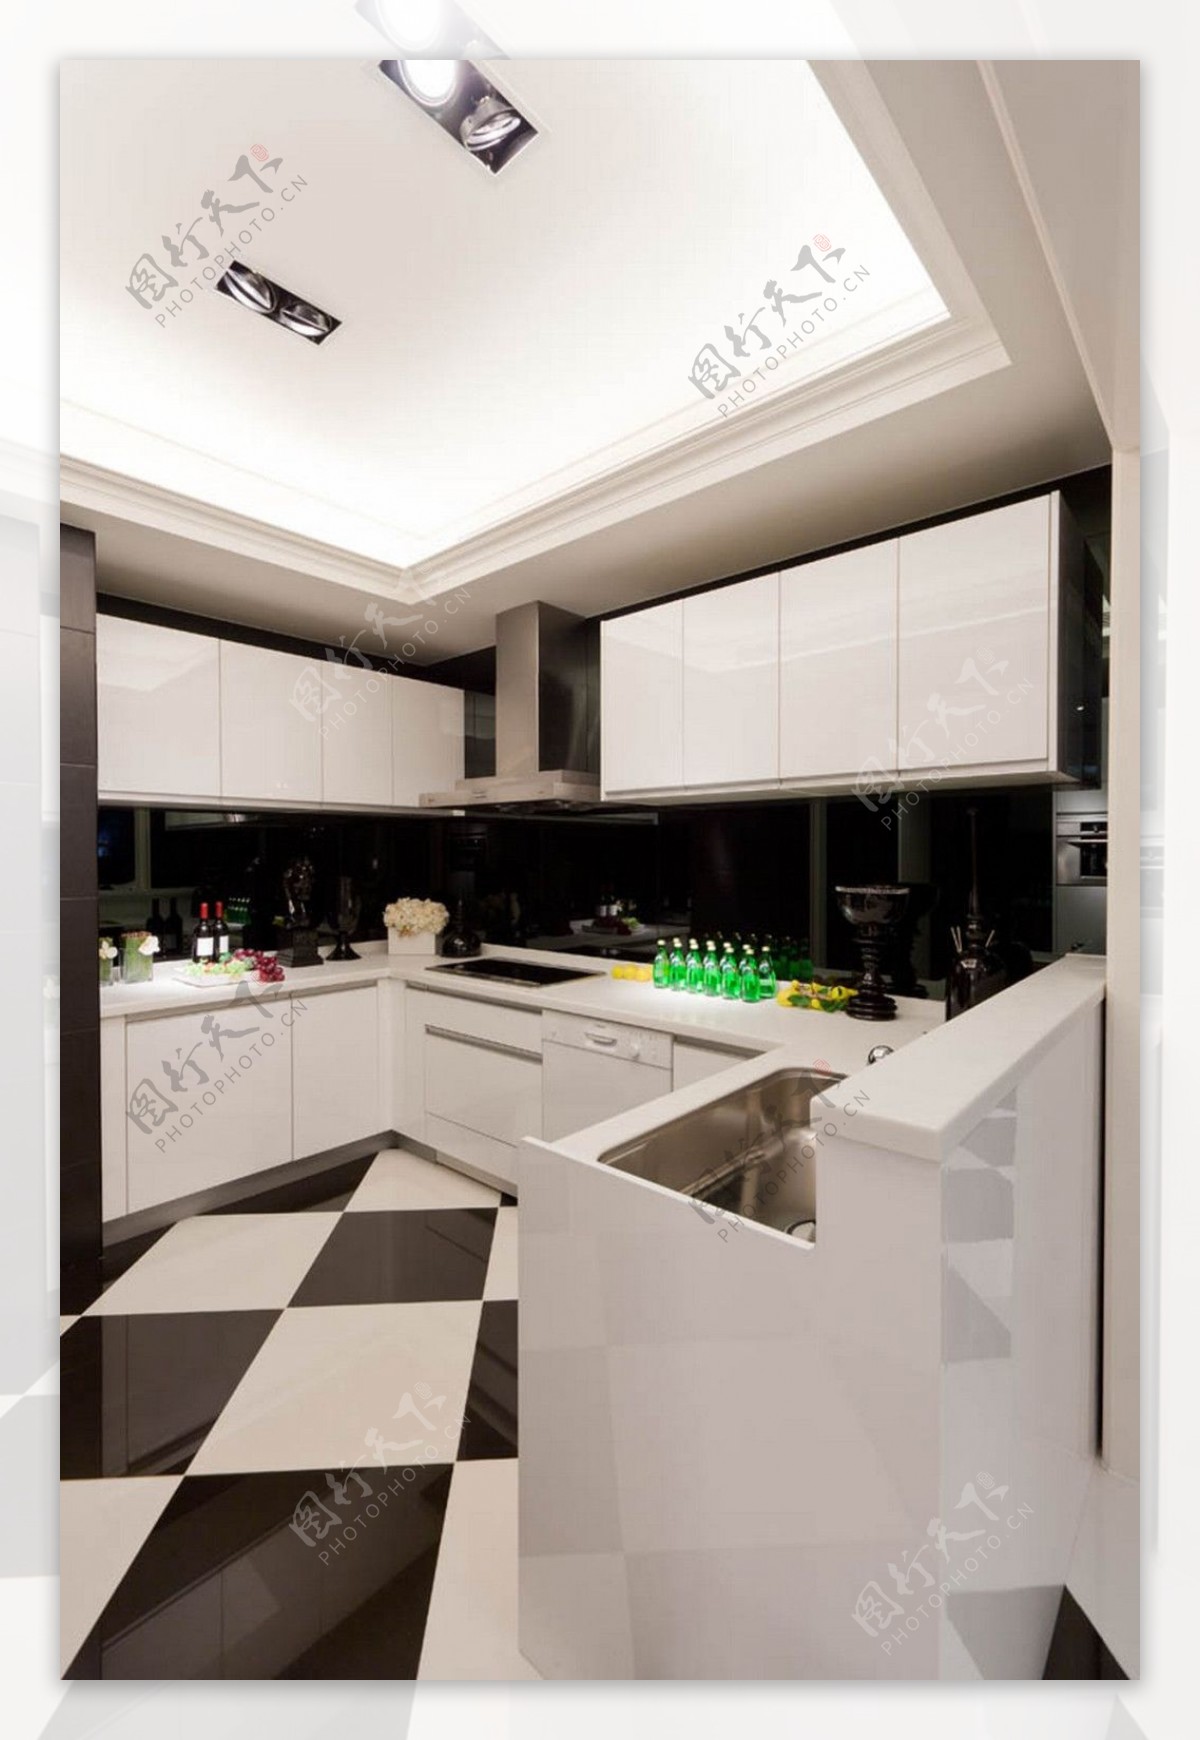 简约风室内设计厨房黑白菱形地砖效果图